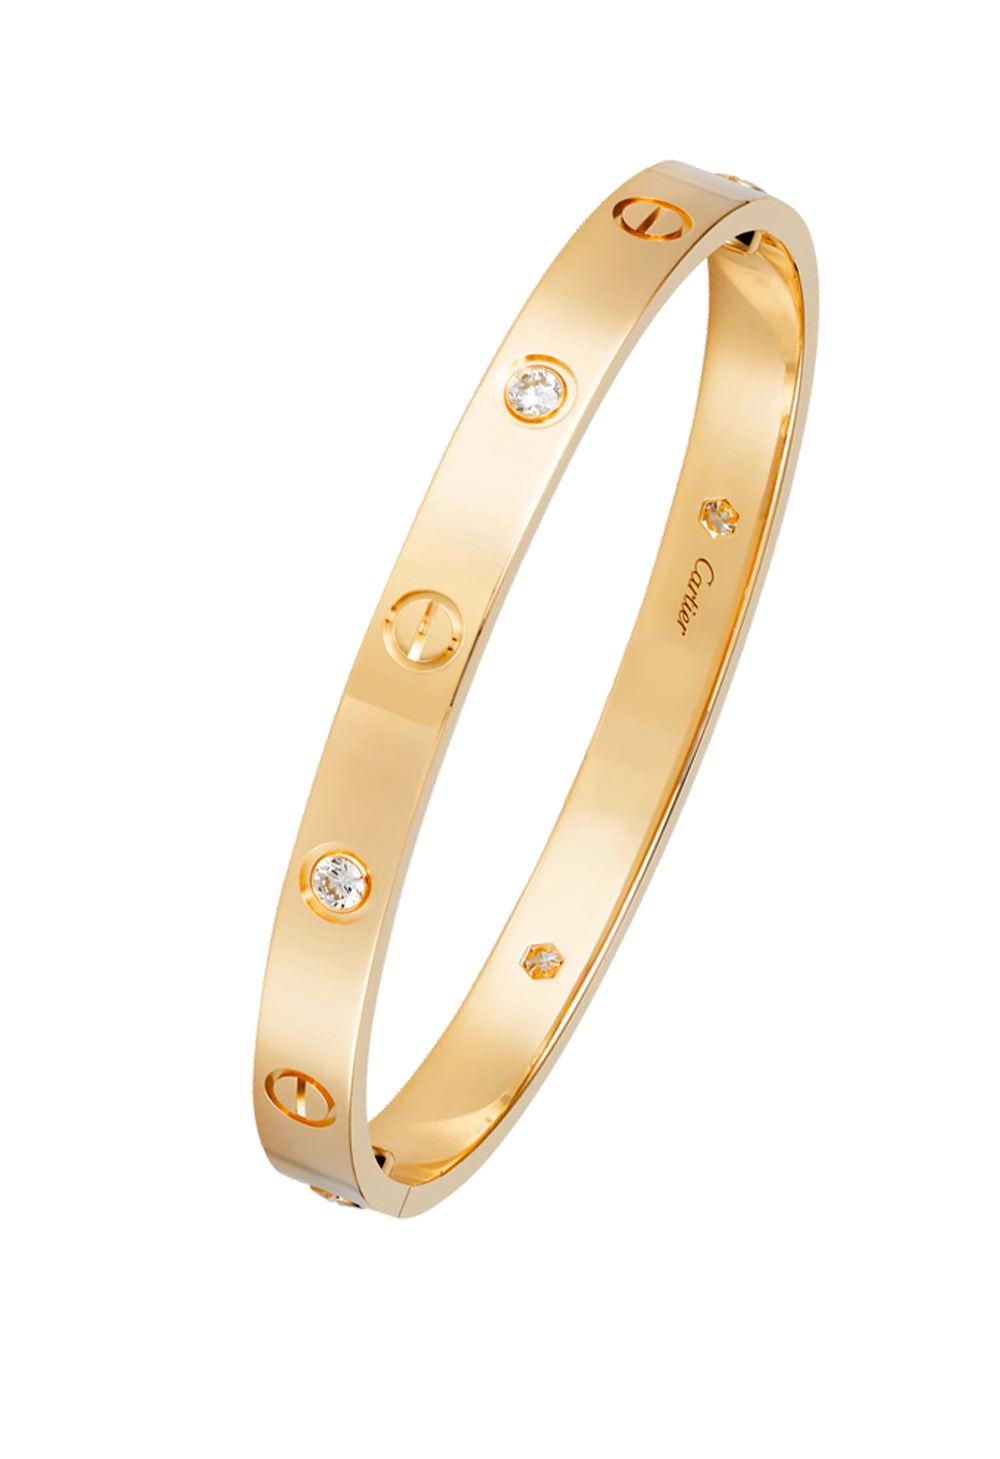 Браслет Cartier Love 4 Diamond Rose Gold Bracelet B6069917 (36040) купить в Москве, выгодная цена - ломбард на Кутузовском